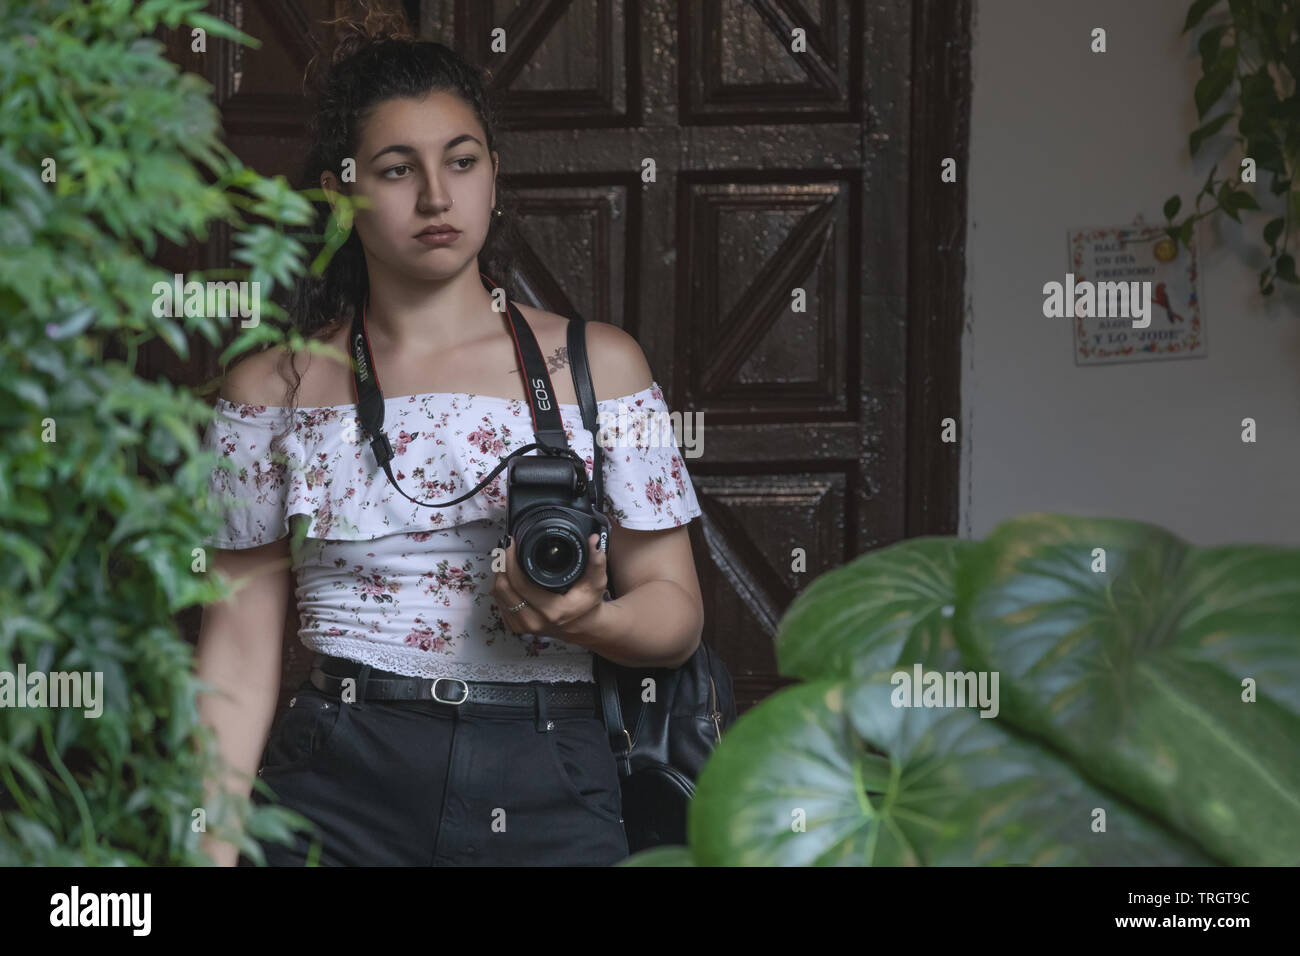 Cordoue, Espagne - 16 mai 2019 : Une jeune femme photographe tenant un appareil photo Canon dans un patio Cordovan Banque D'Images